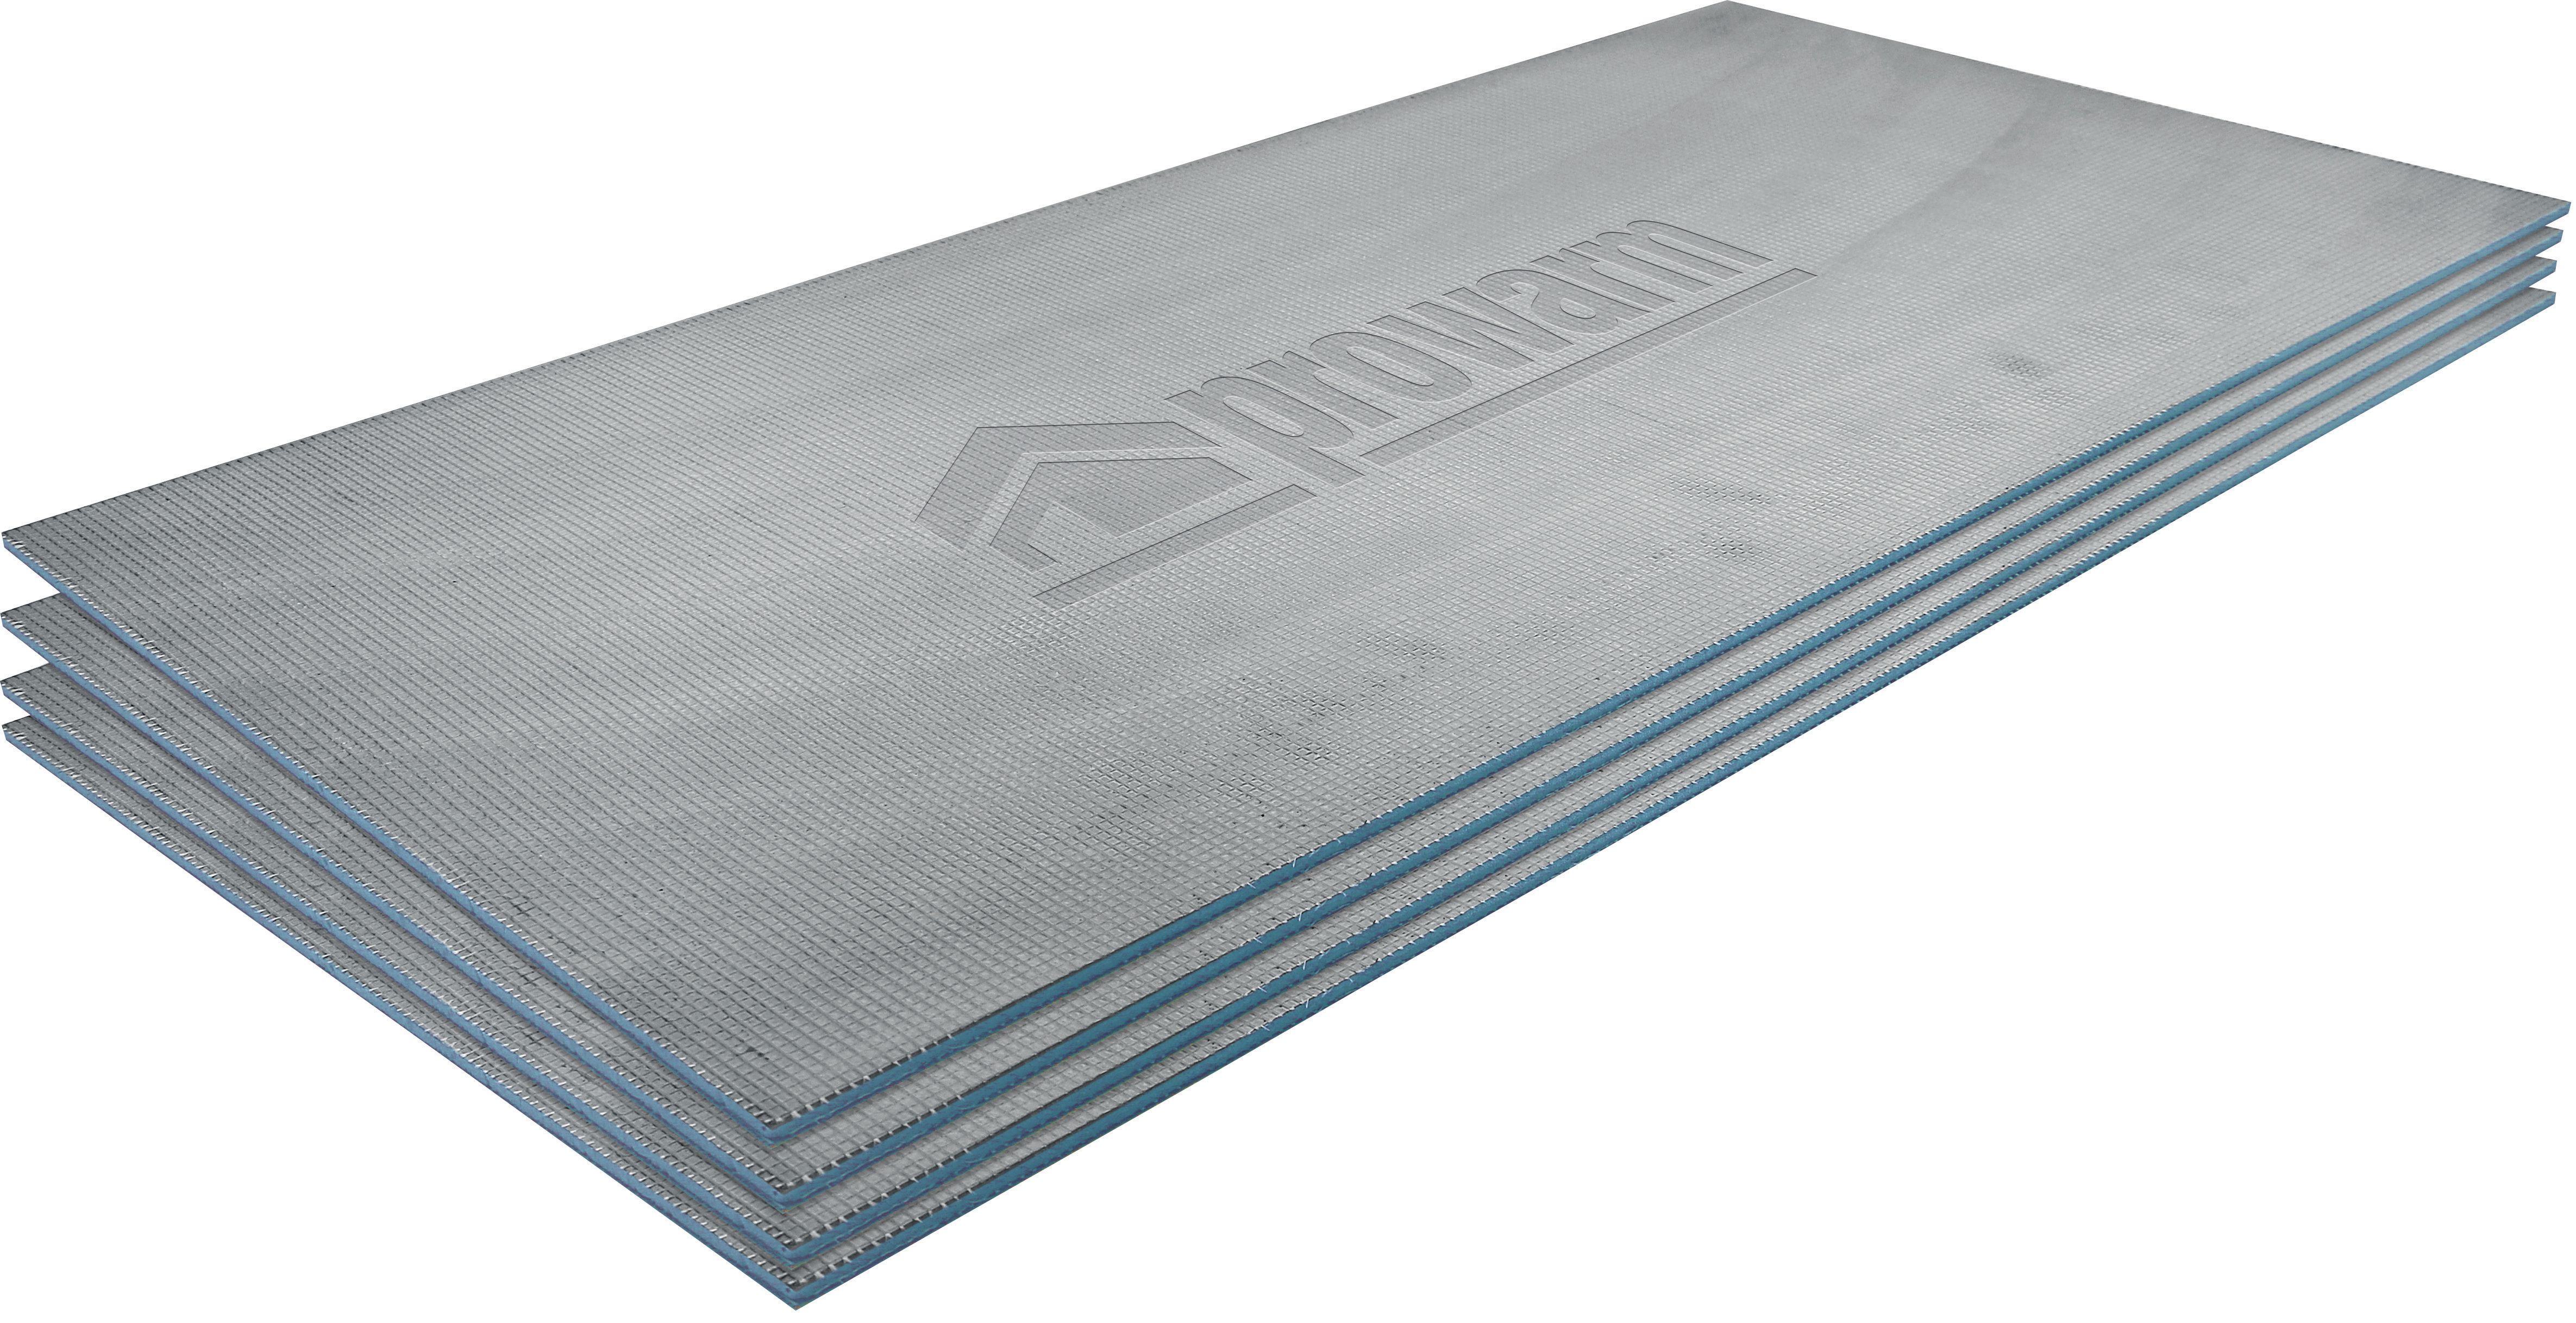 Image of ProWarm BACKER-PRO Tile Insulation Backer Board (Single) - 1200 x 600 x 6mm